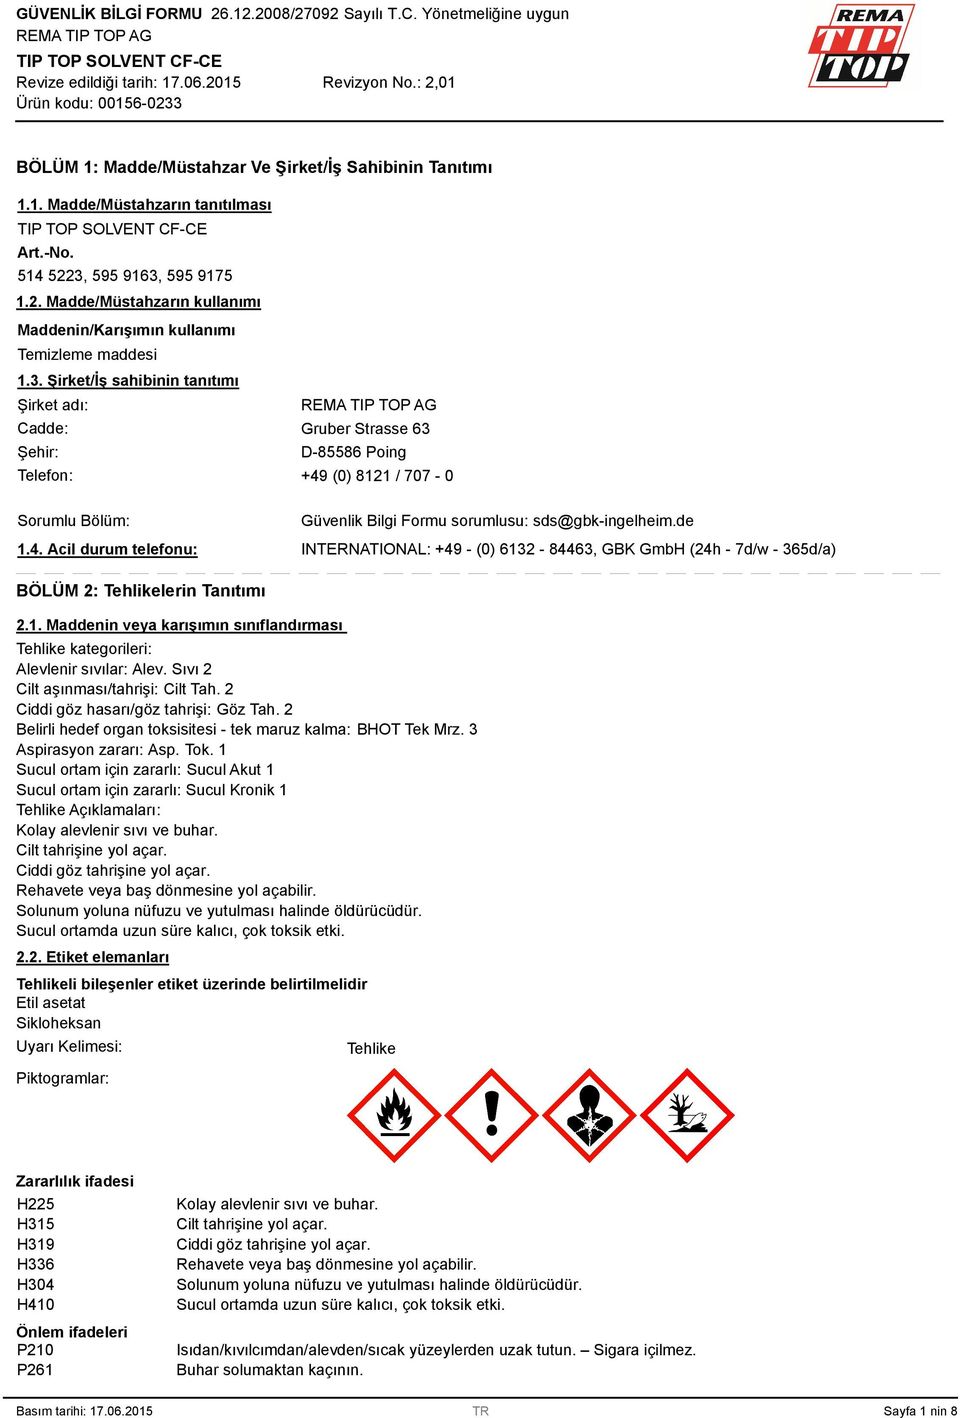 de INTERNATIONAL: +49 - (0) 612-8446, GBK GmbH (24h - 7d/w - 65d/a) BÖLÜM 2: Tehlikelerin Tanıtımı 2.1. Maddenin veya karışımın sınıflandırması Tehlike kategorileri: Alevlenir sıvılar: Alev.